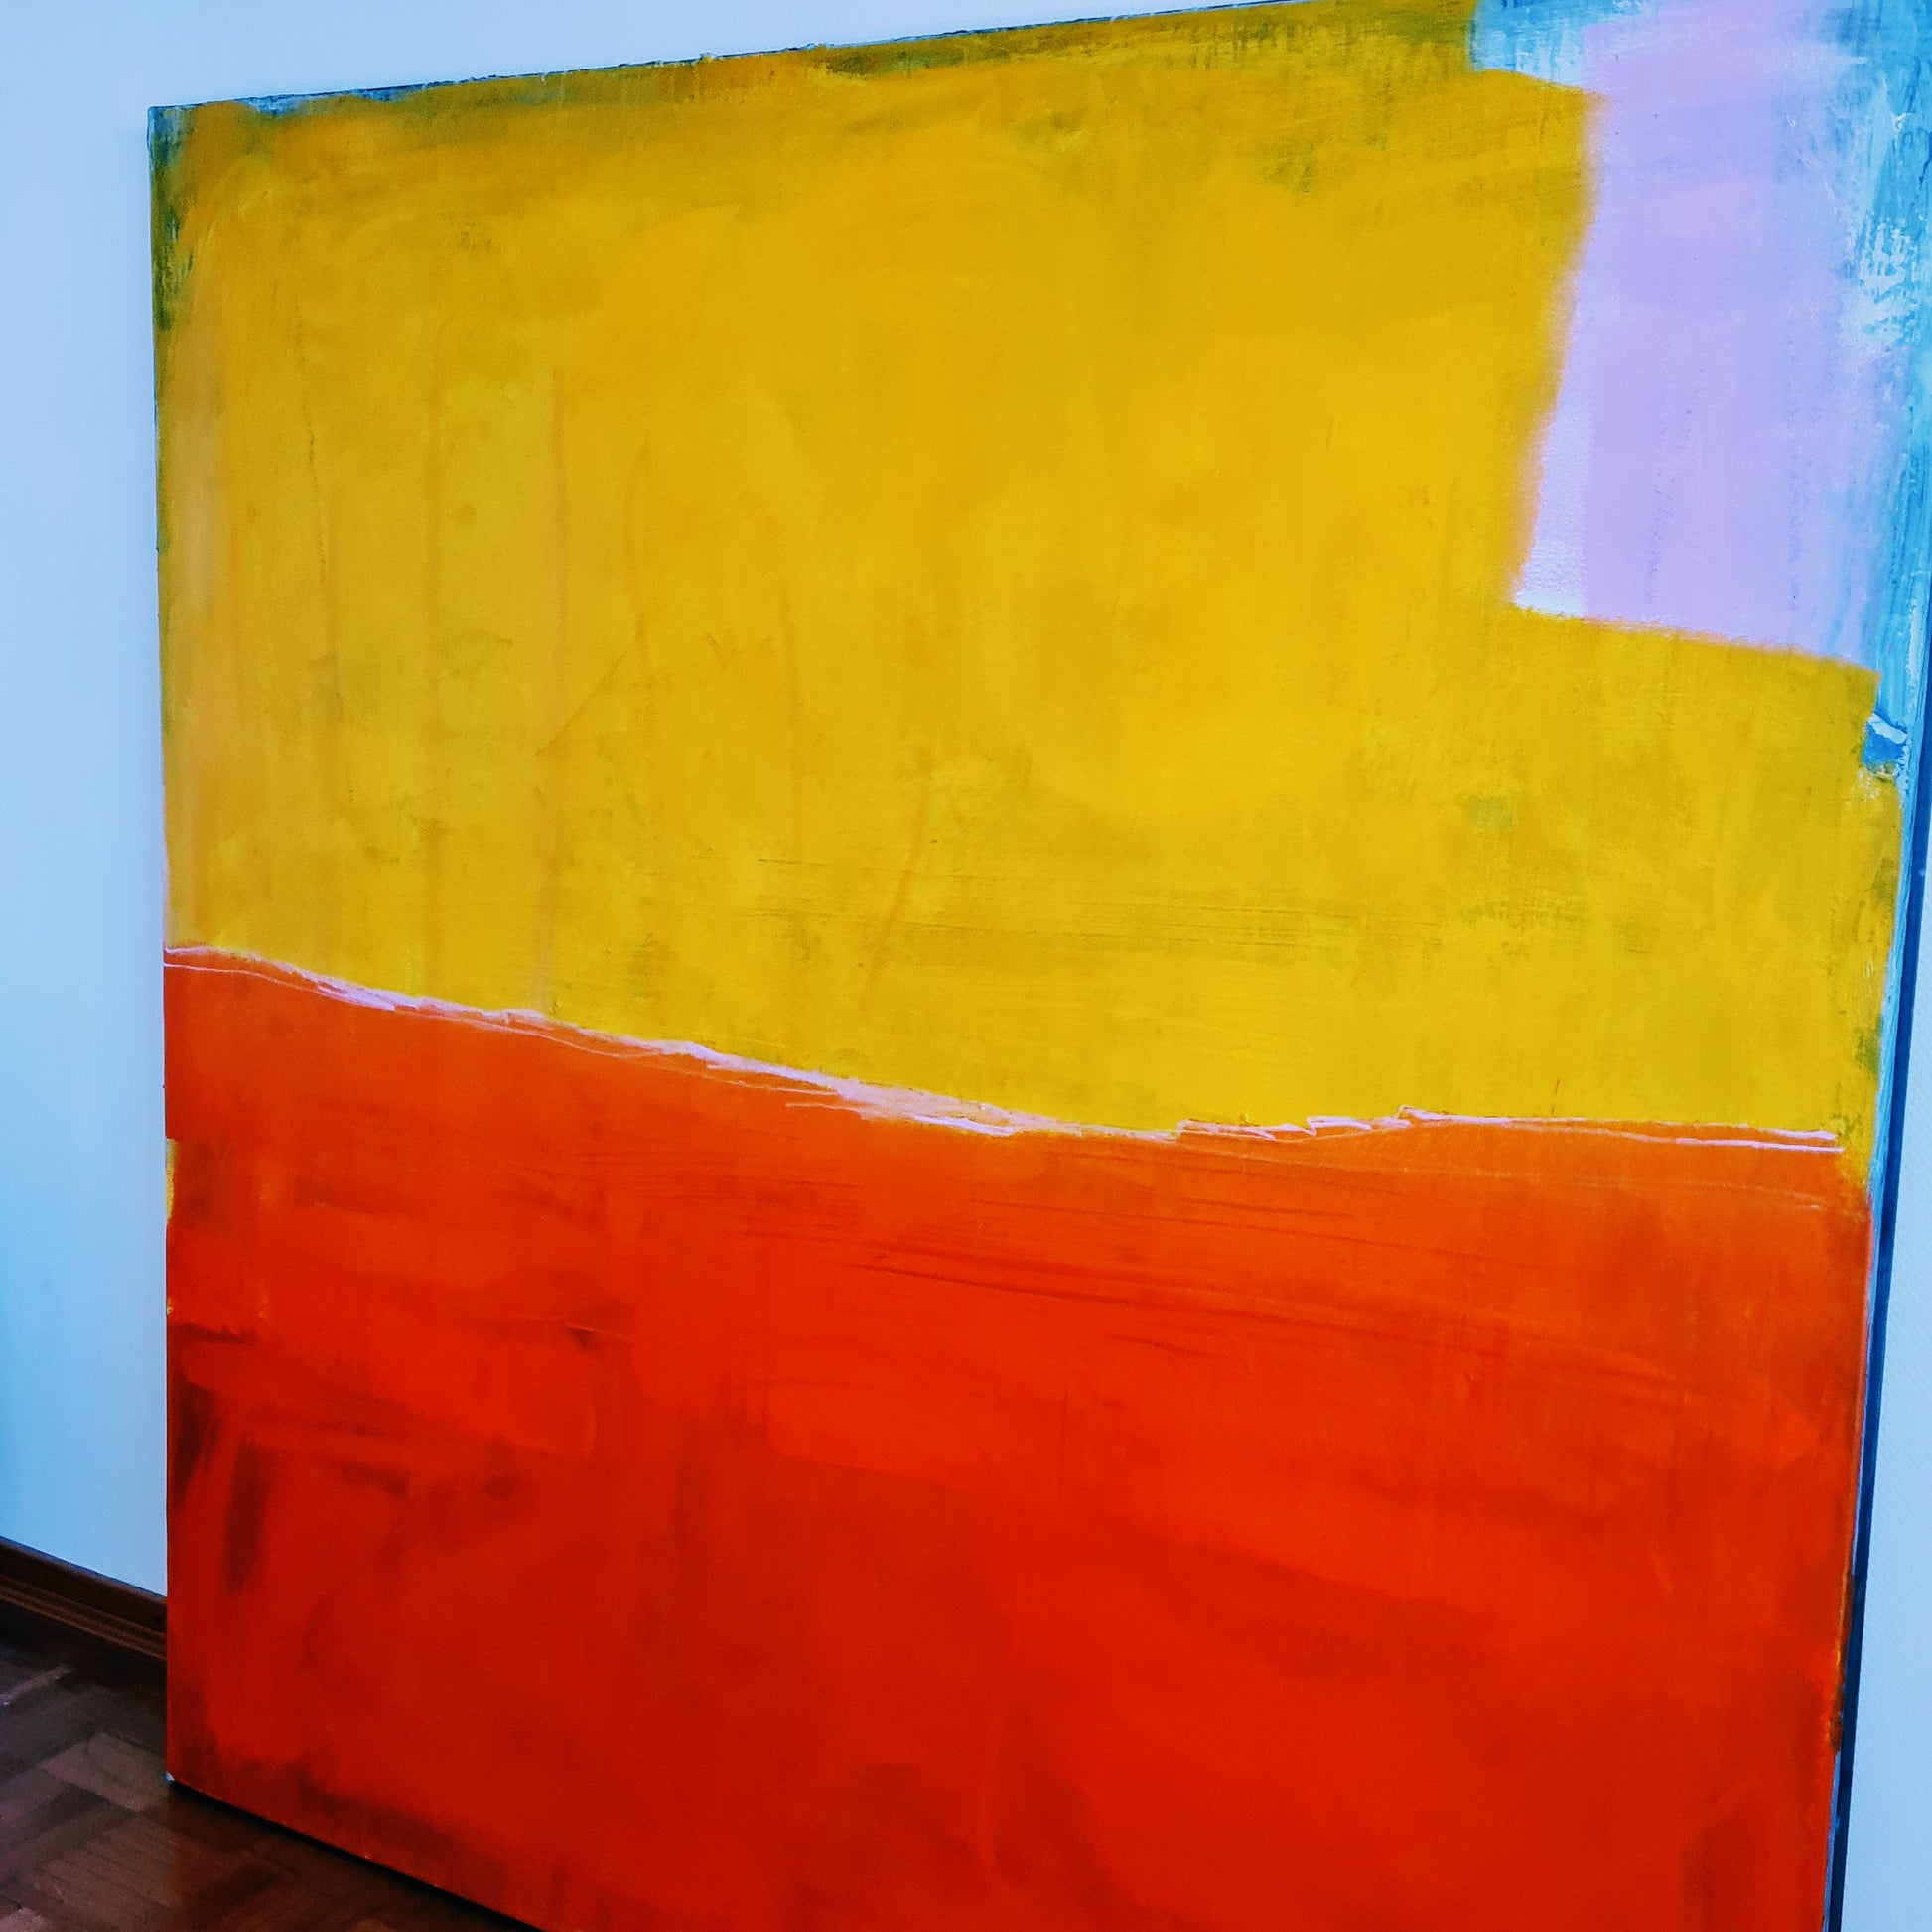  Sonnenglühen am Horizont / 160 x 160 cm / orange gelb  acrylbilder auf leinwand